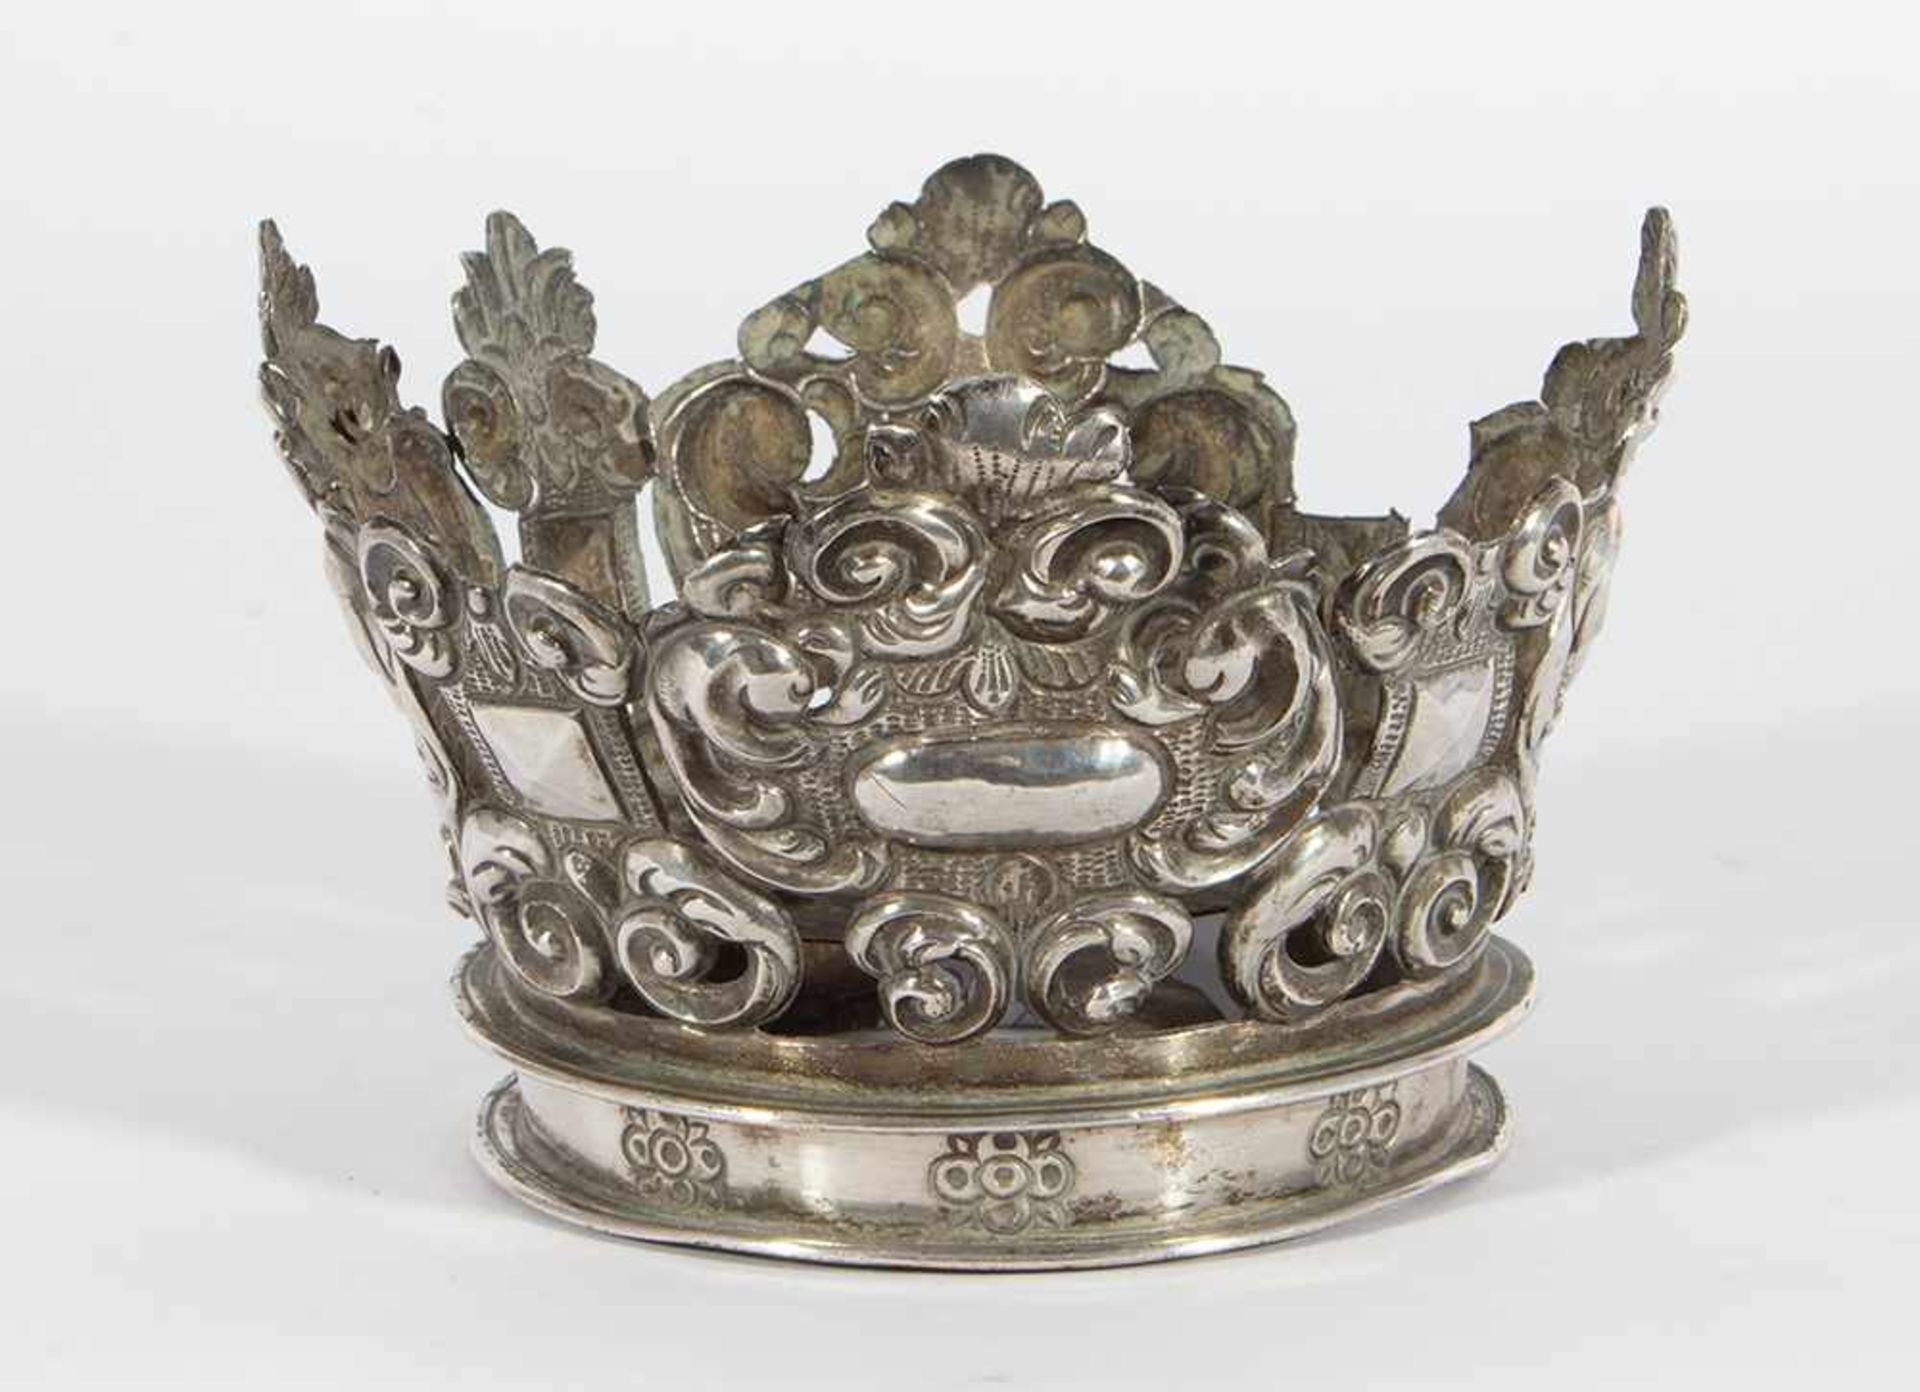 Corona colonial en plata repujada y cincelada. México o Perú, siglo XVII-XVIII.Corona colonia